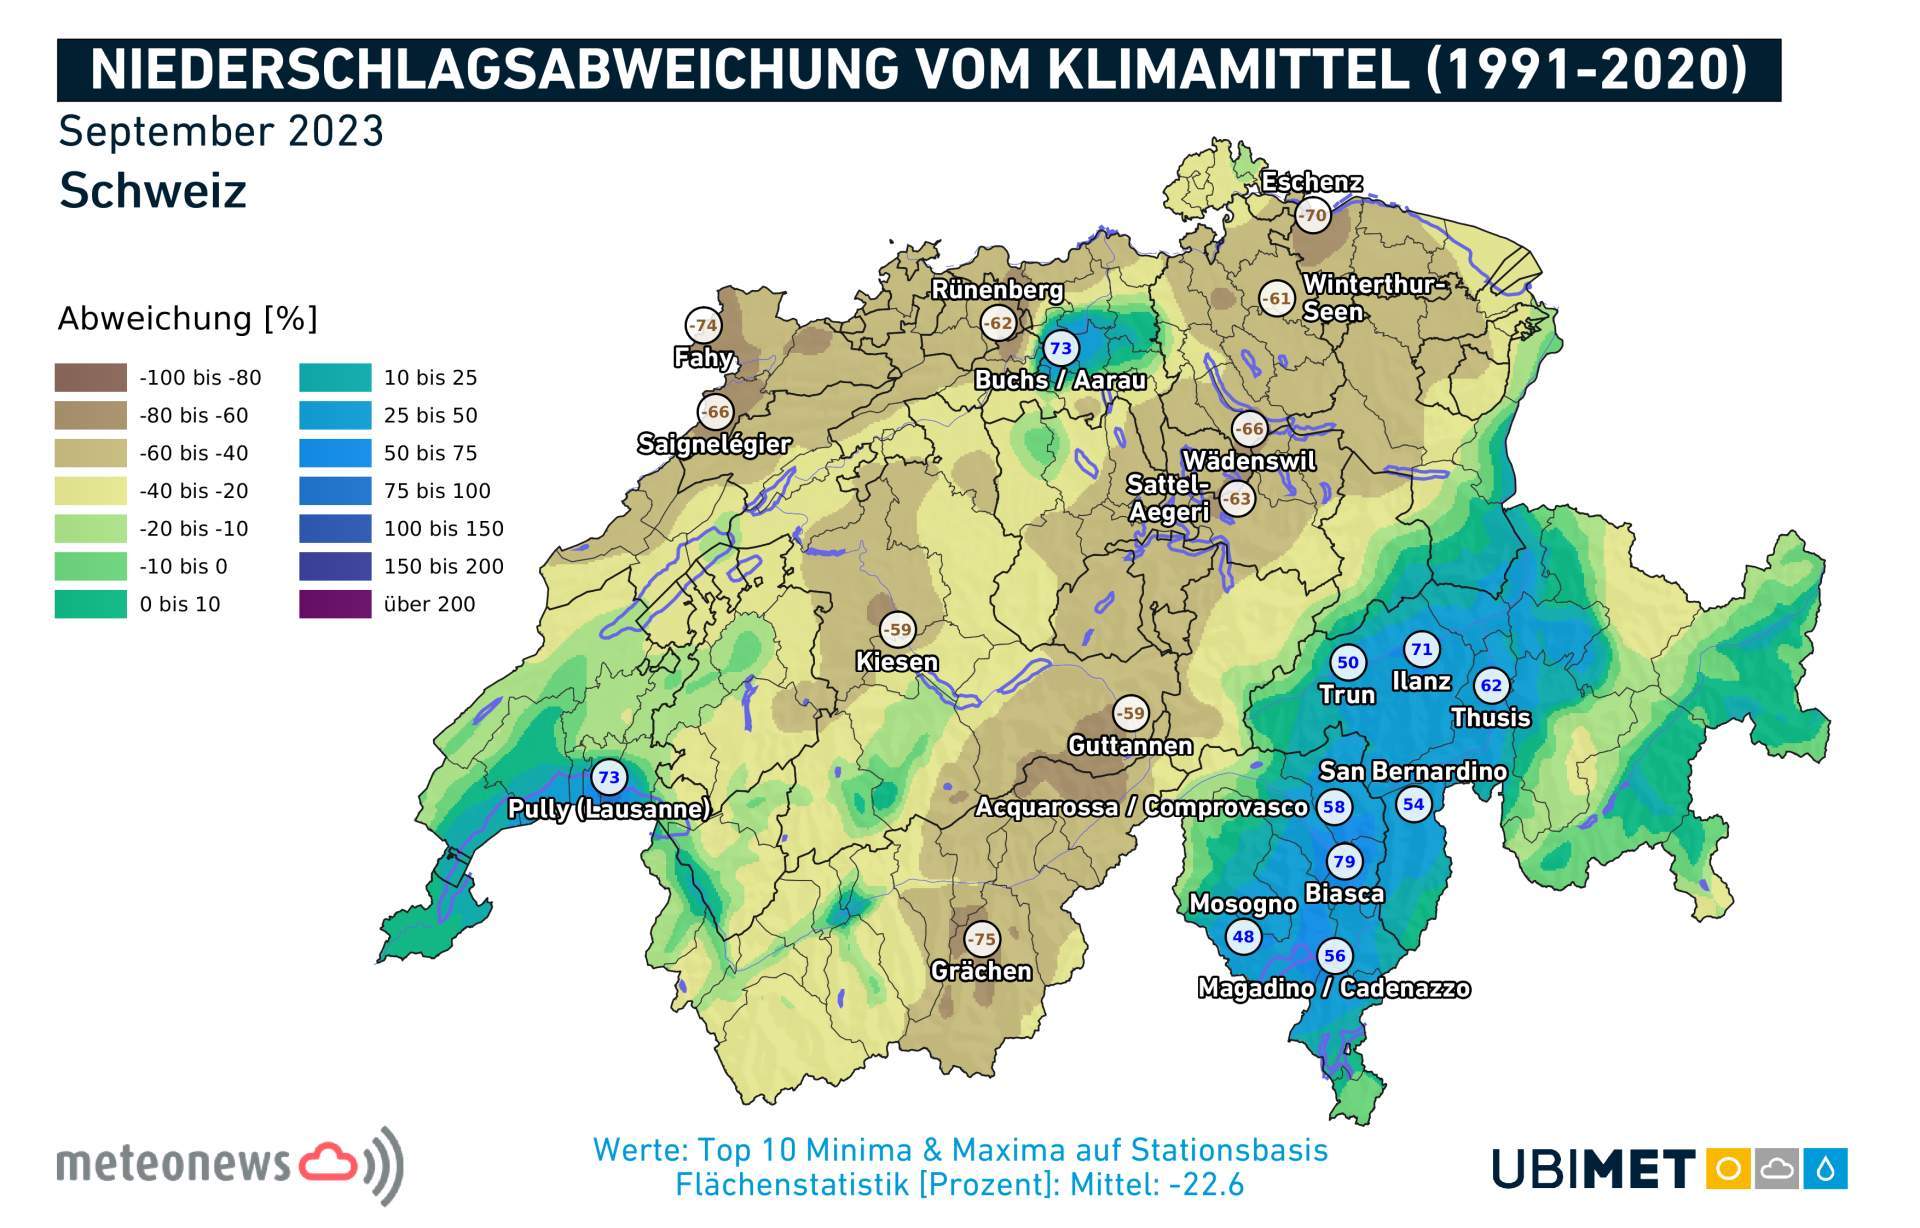 Ecart des précipitations par rapport à la norme climatique ; Source: UBIMET, MeteoNews